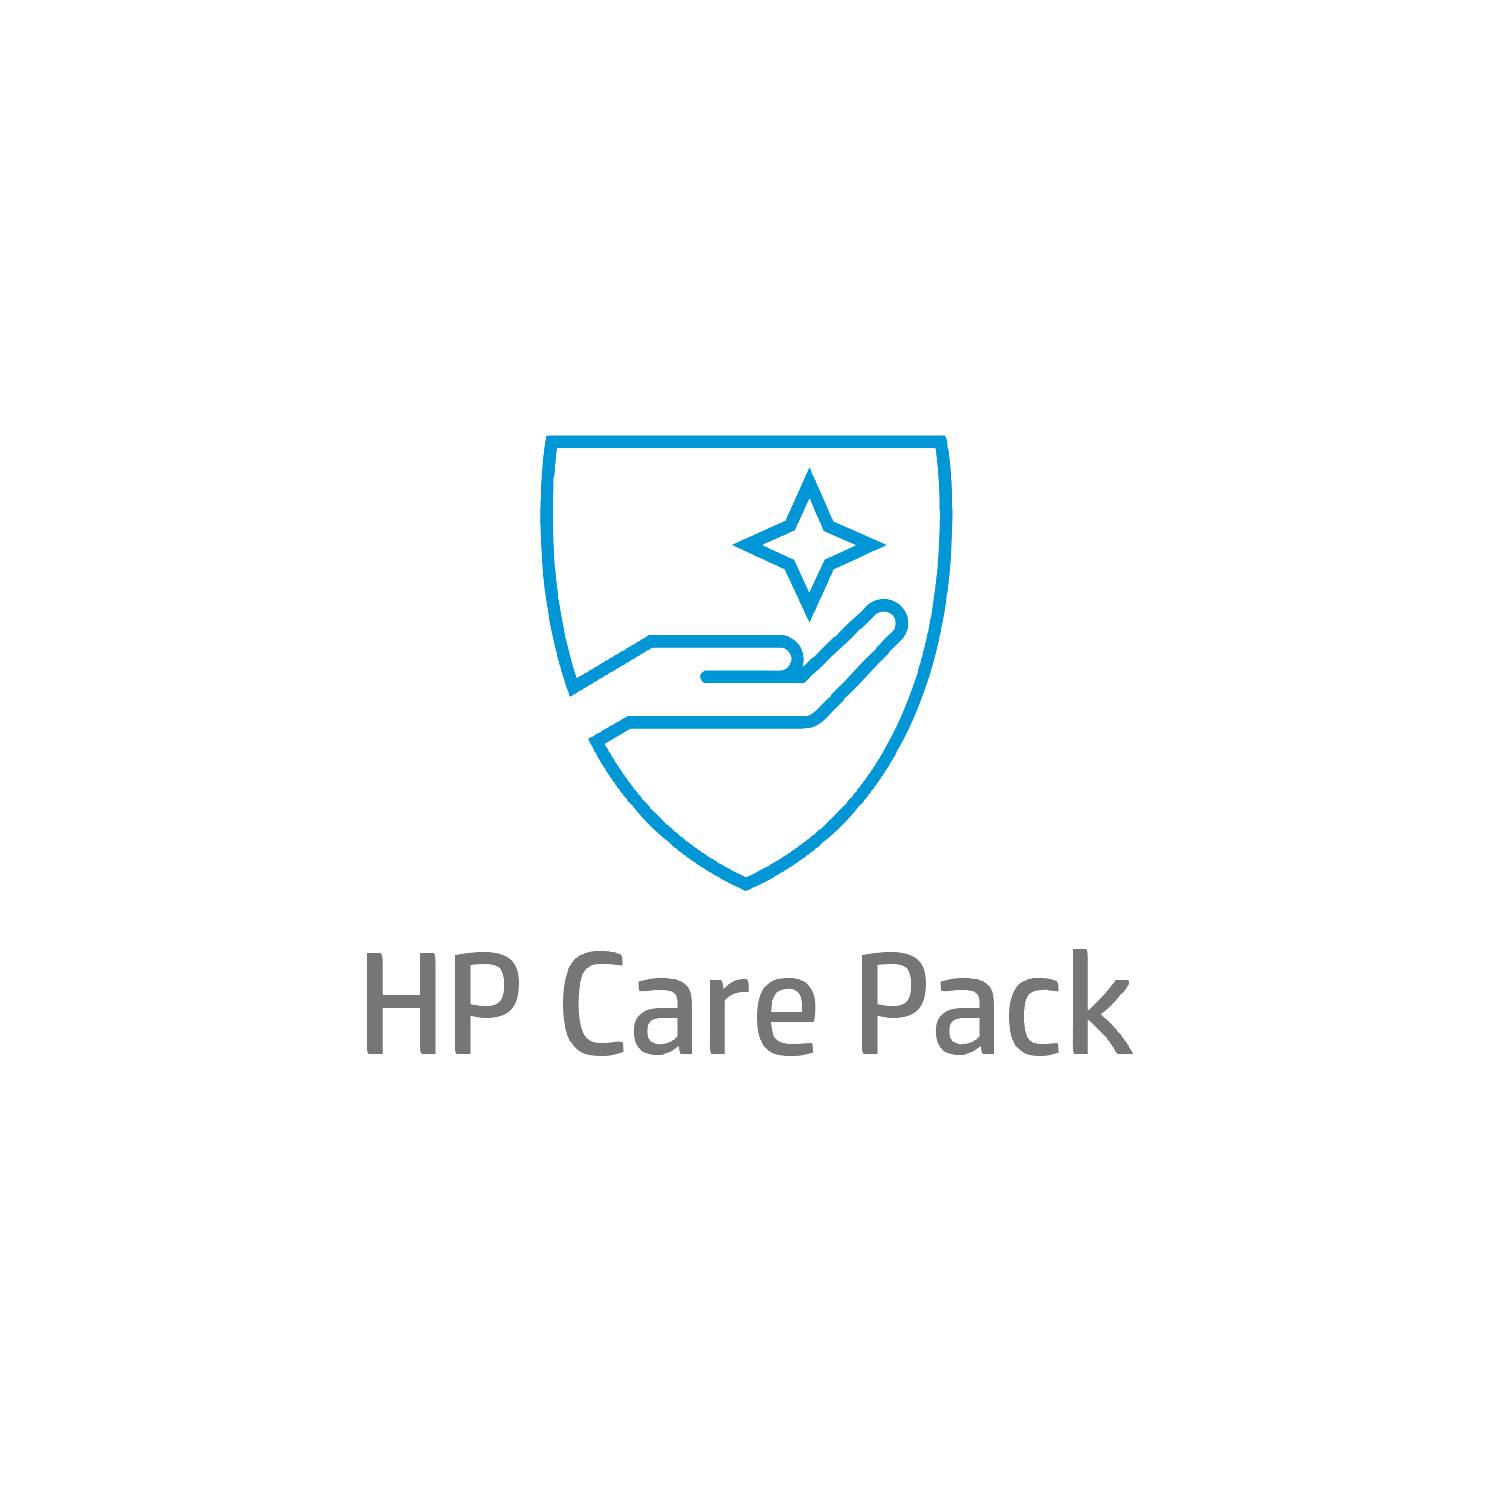 Rca Informatique - image du produit : HP CARE PACK 3 ANS ECHANGE J+1 SCANJET 4500